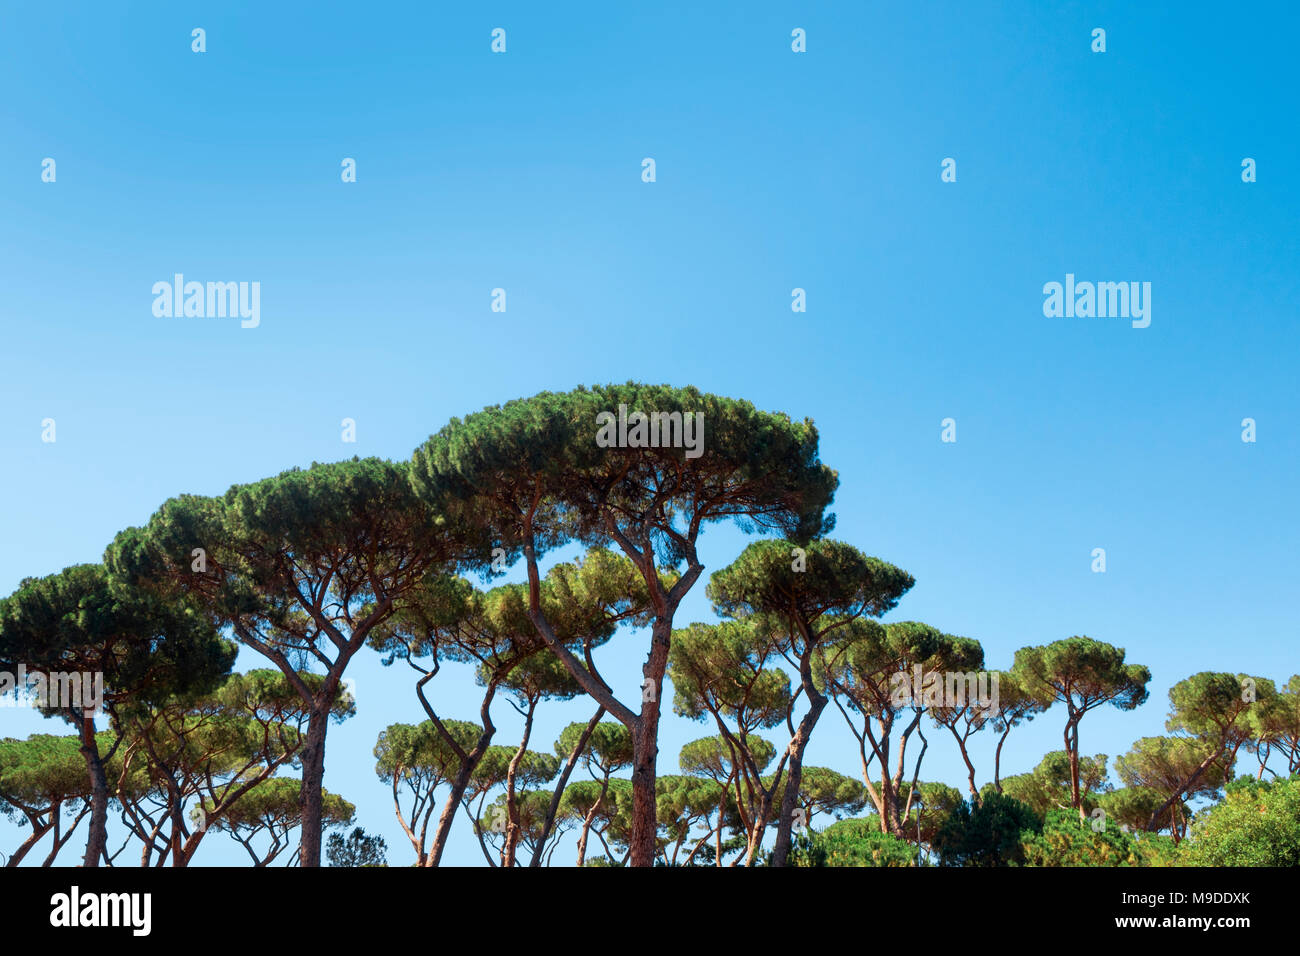 Majestically tall umbrella pine trees, Pinus pinea, in the Villa Borghese landscape gardens near Siena Square in Rome Stock Photo